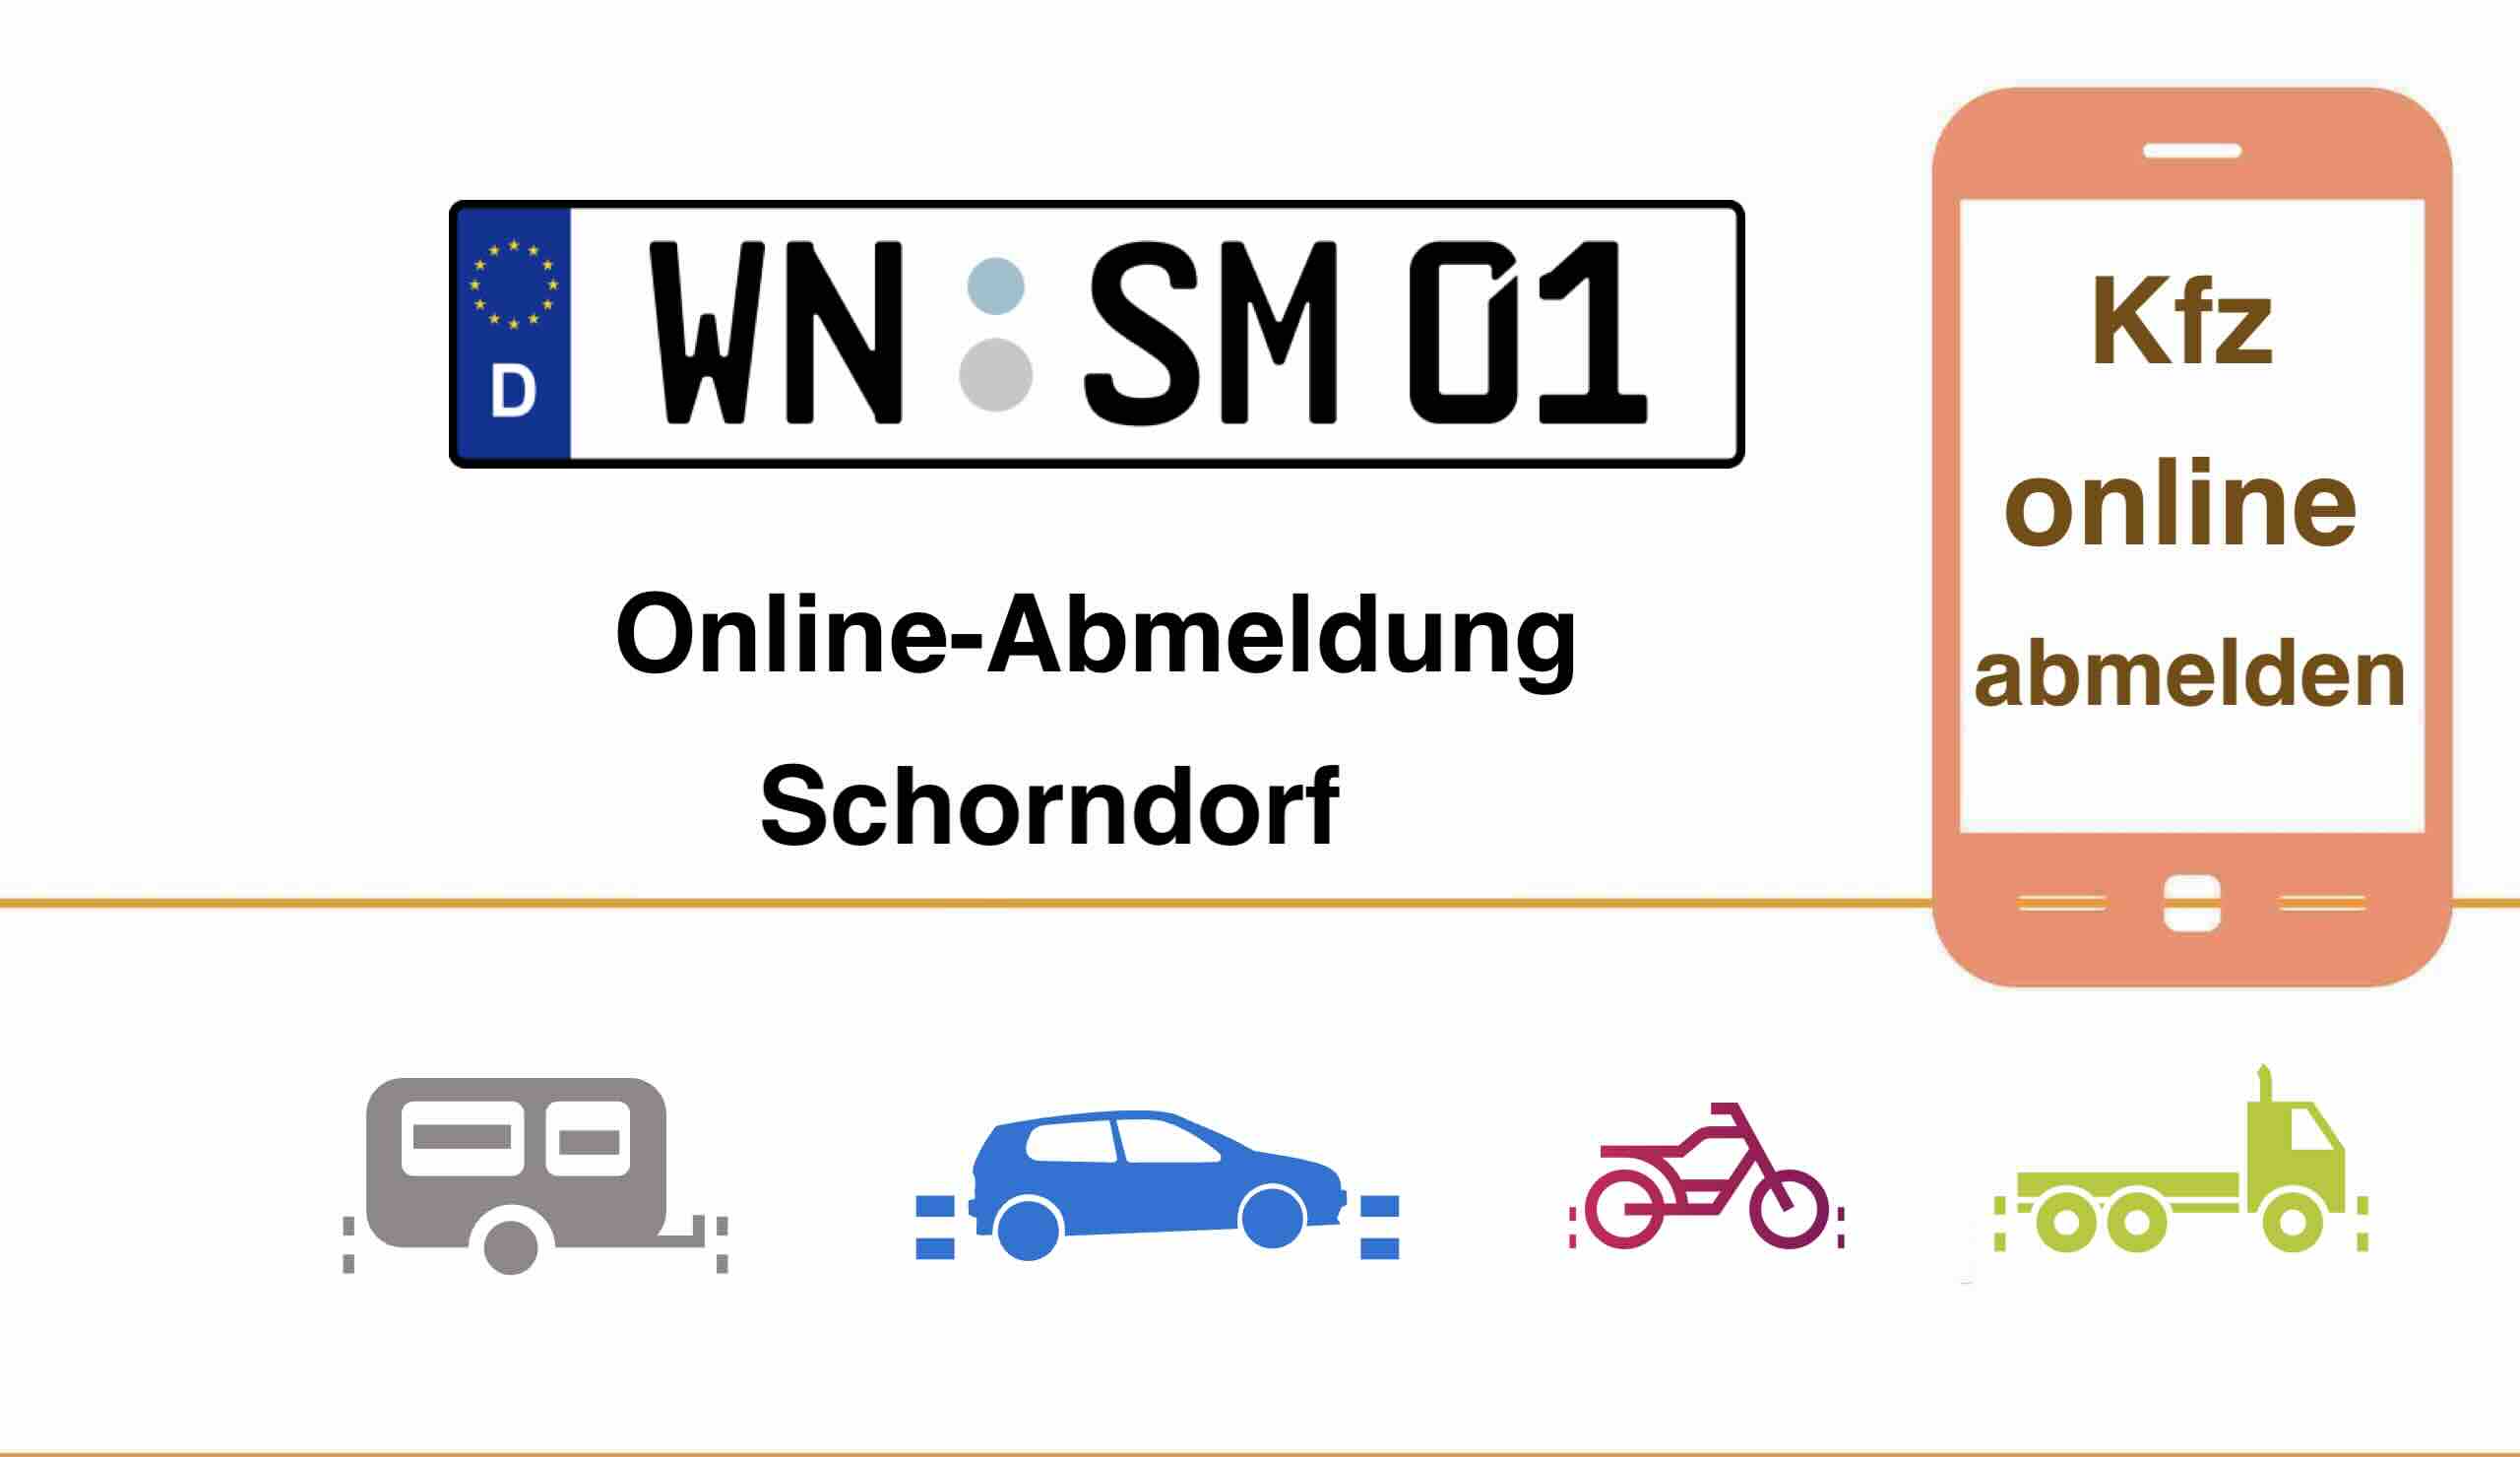 Kfz Online-Abmeldung in Schorndorf 